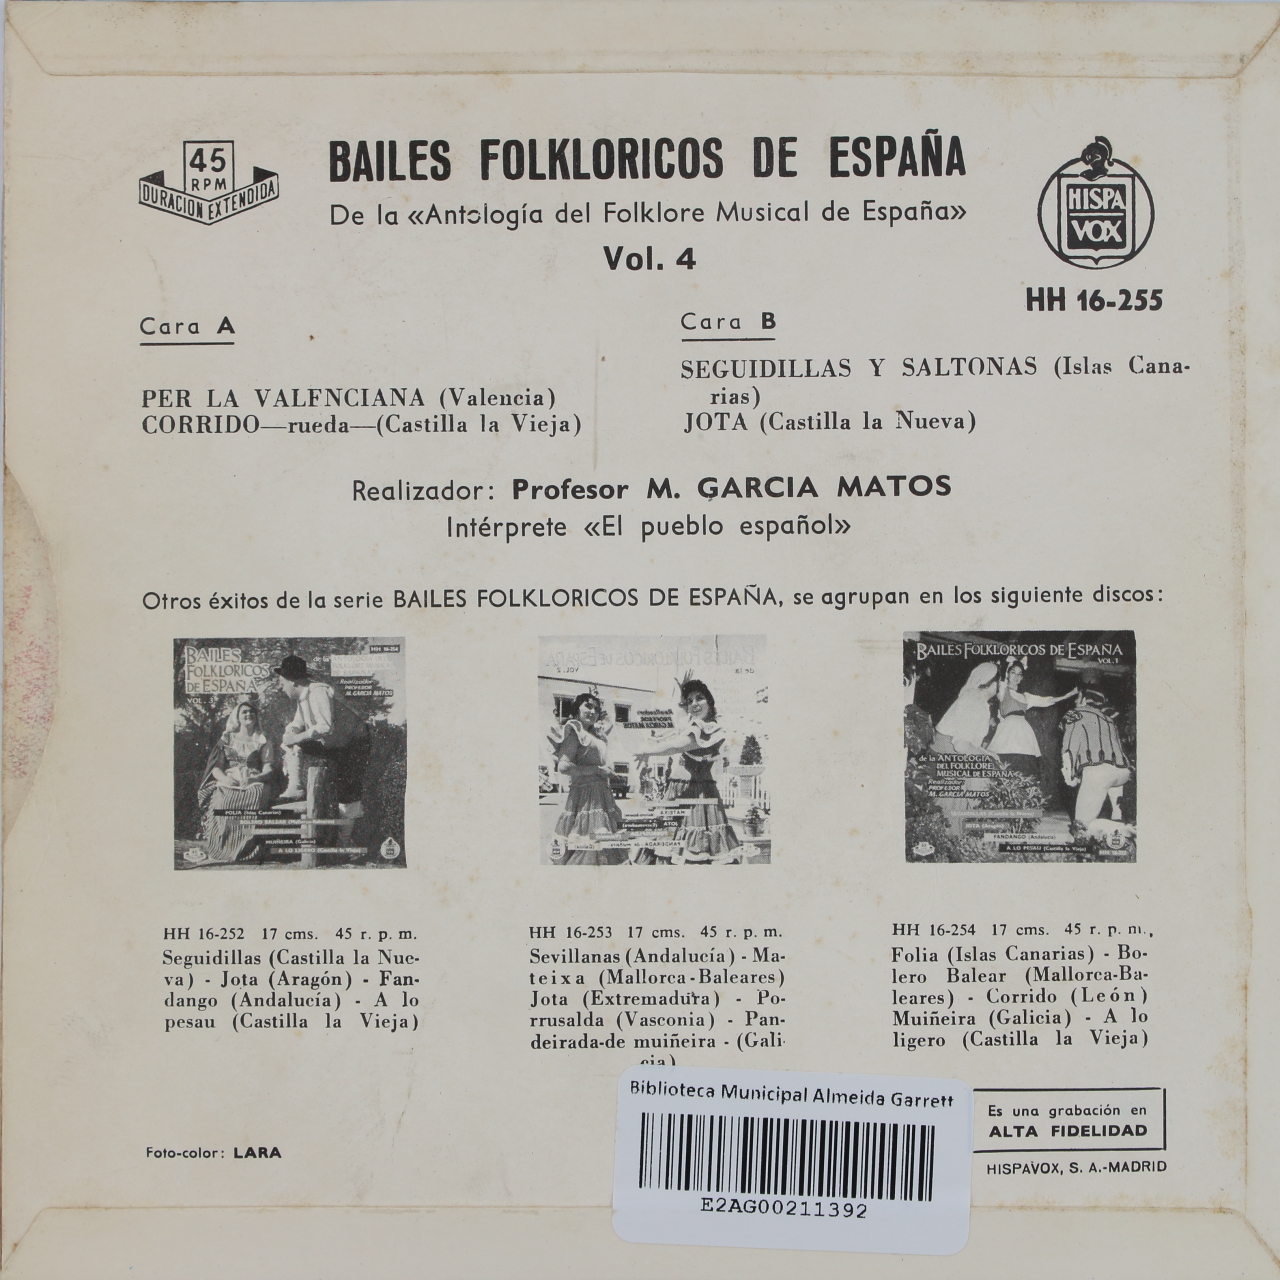 Bailes folkloricos de España Vol. 4